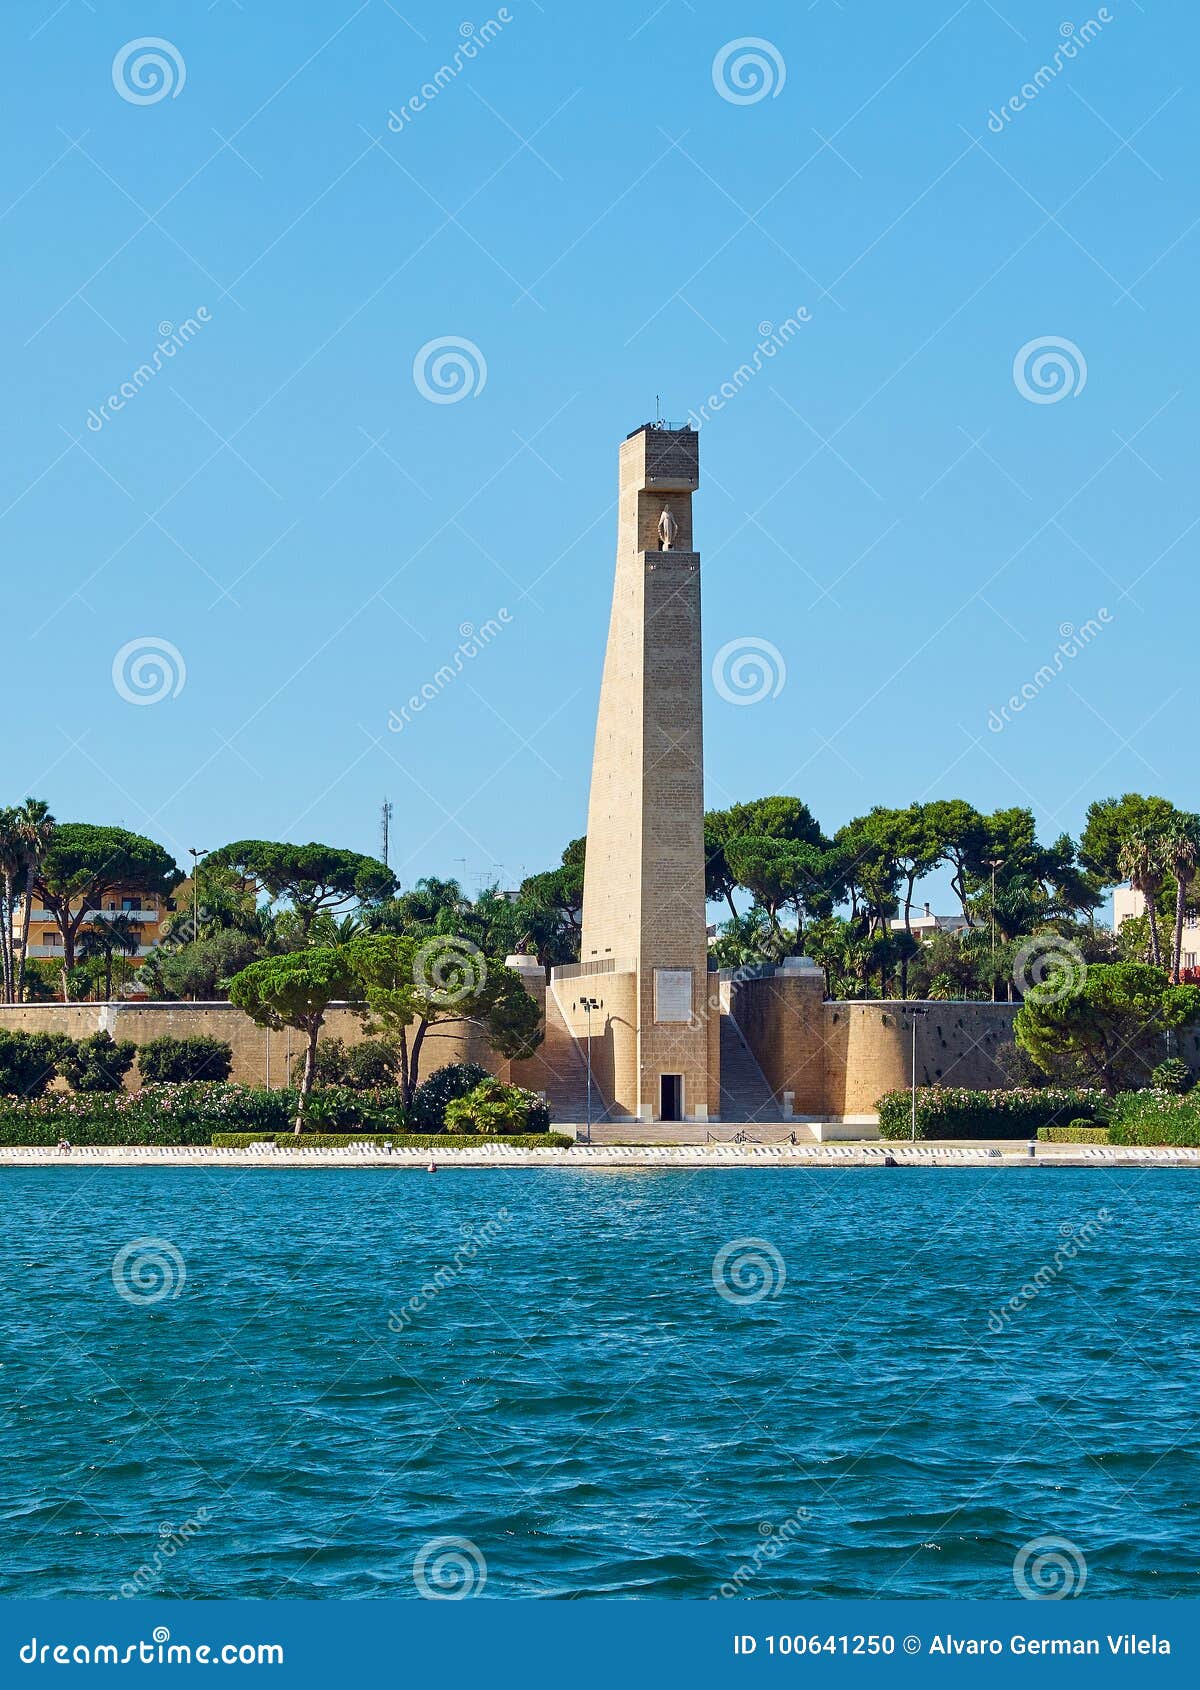 monument to italian sailors. brindisi.